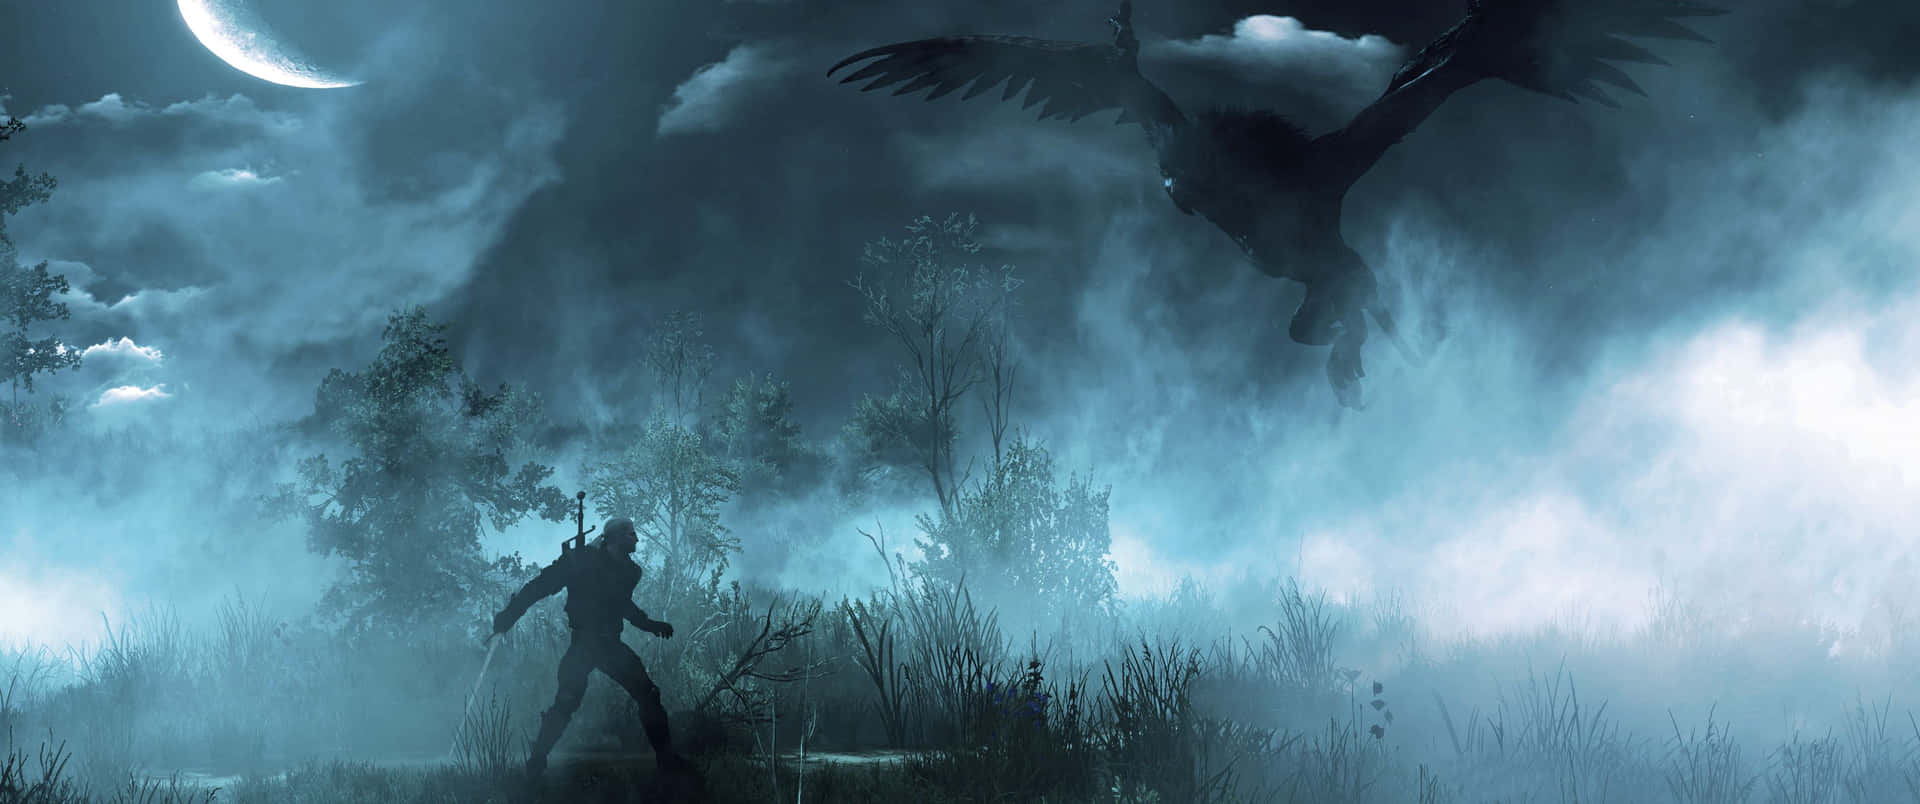 An epic battle between Geralt of Rivia and an unseen foe Wallpaper